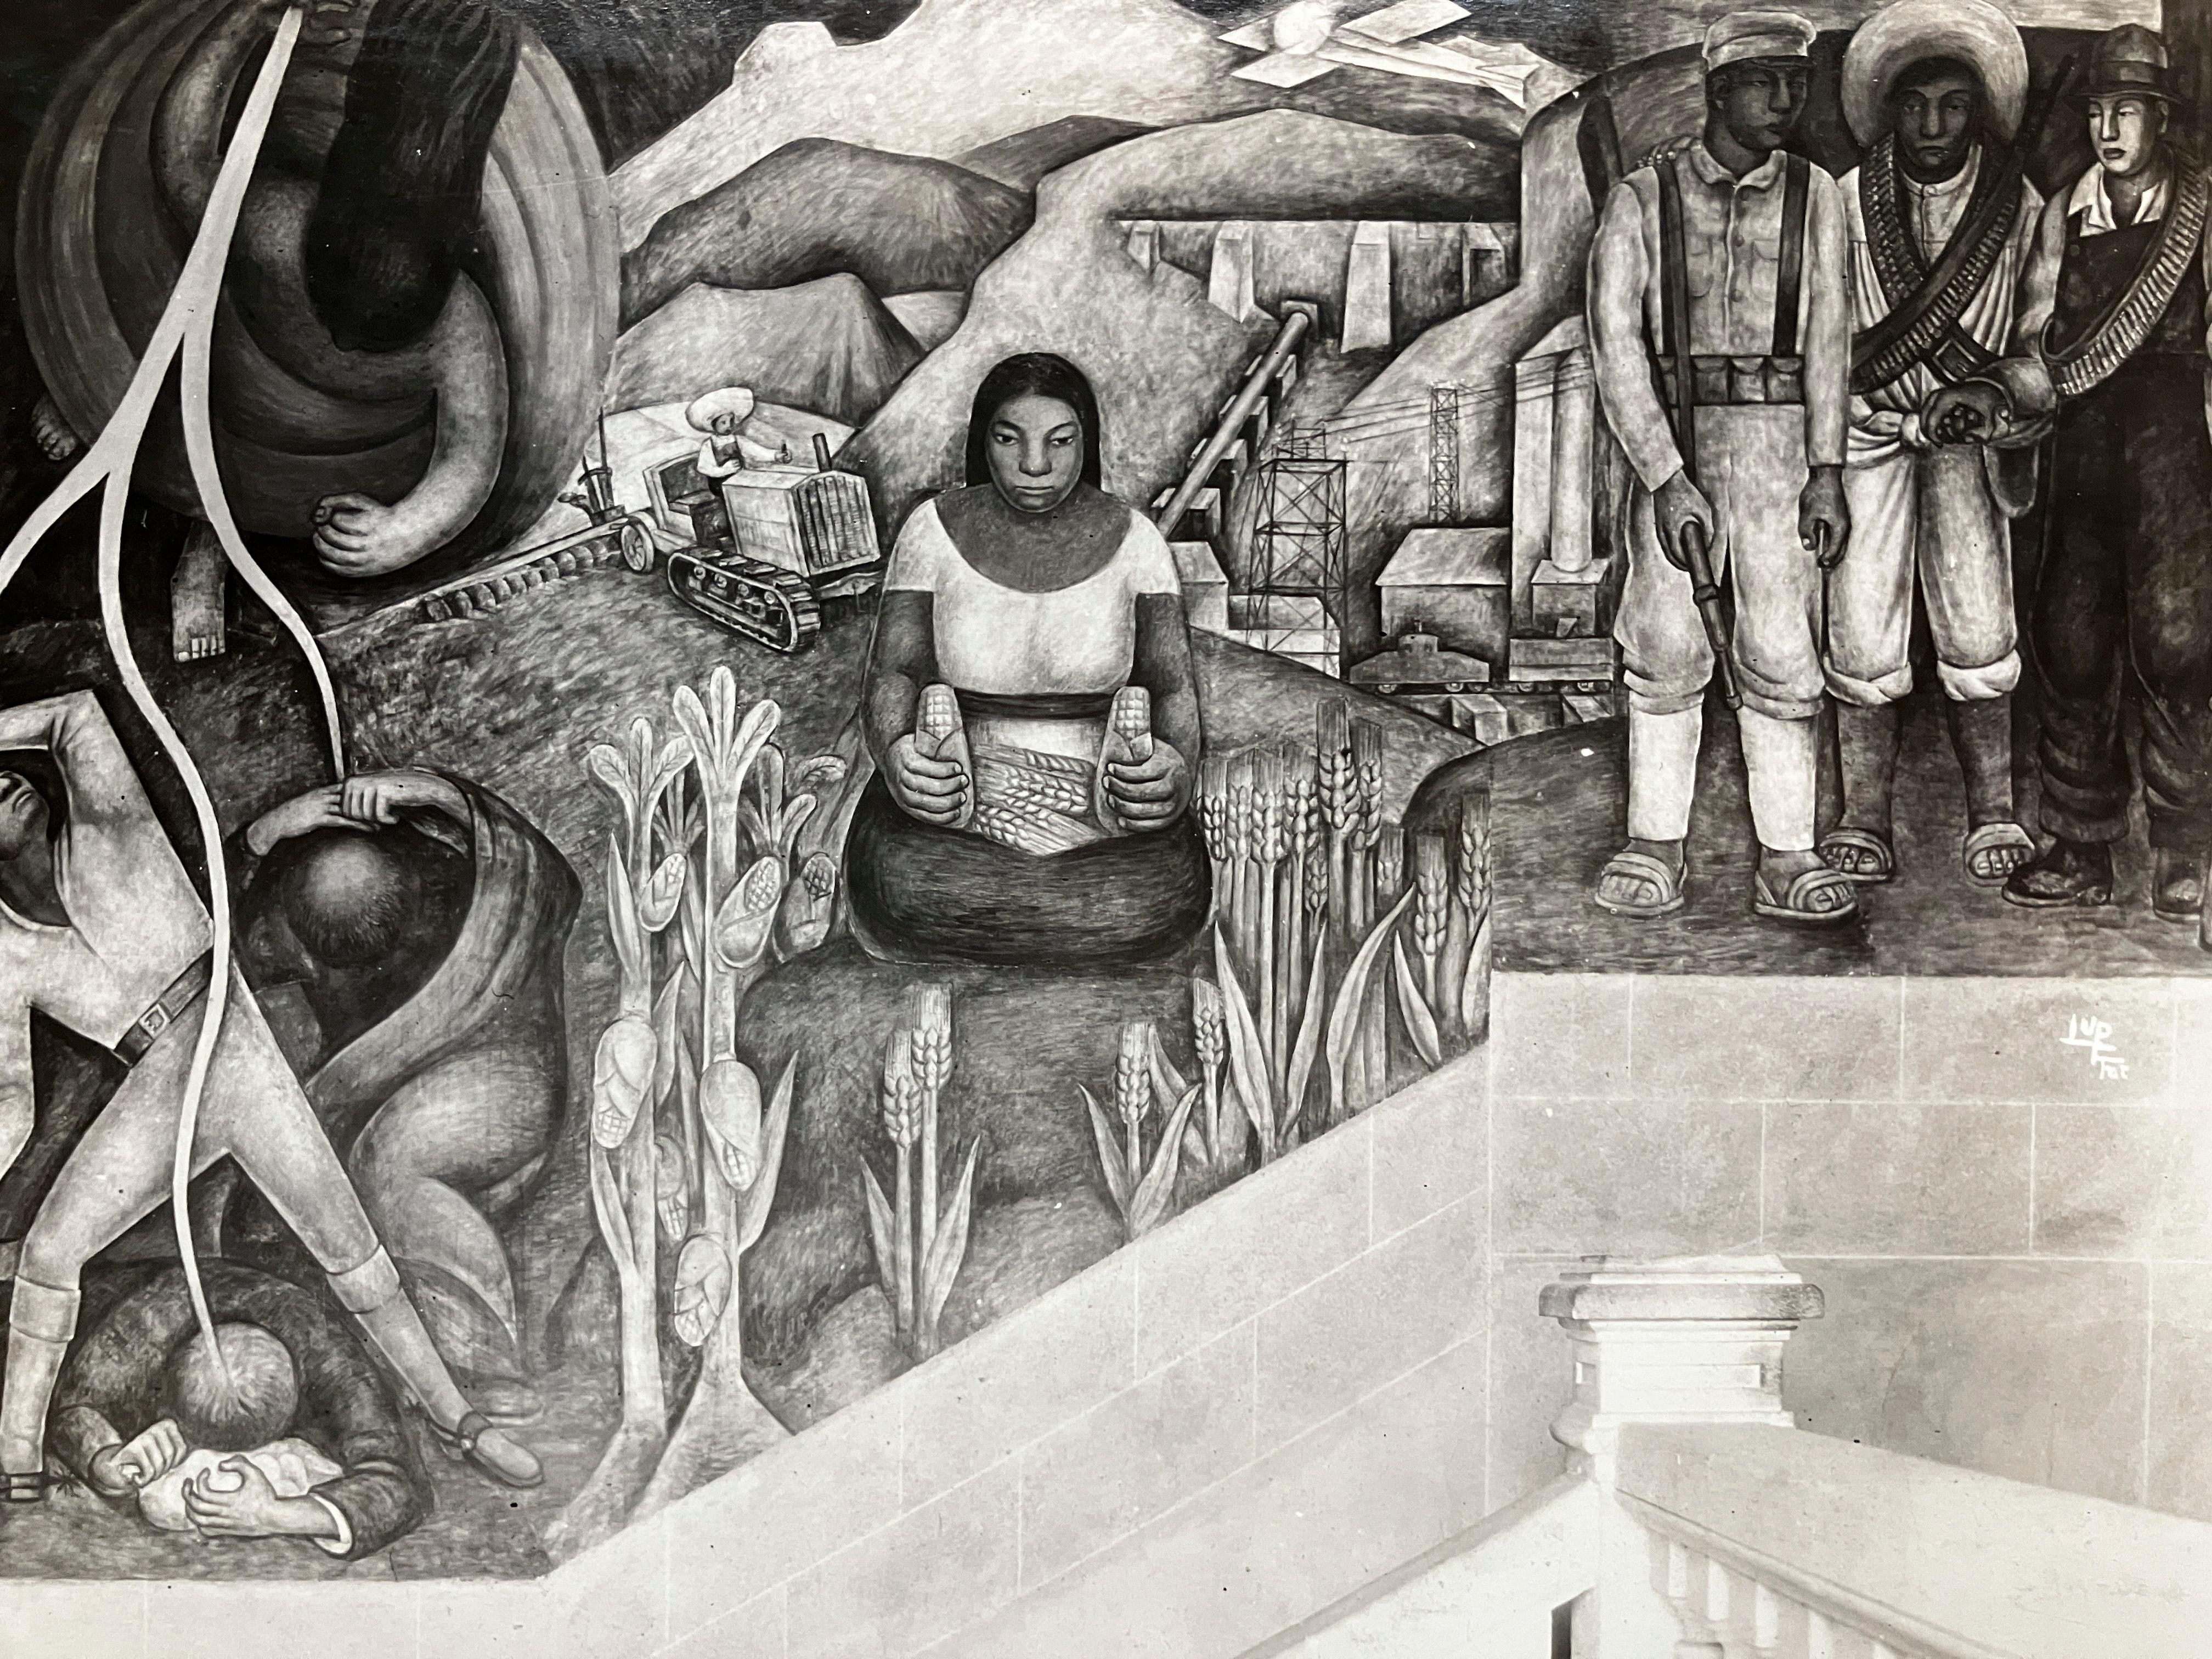 1920's Silber Gelatine Druck von Tina Modotti von Diego Rivera Fresko.